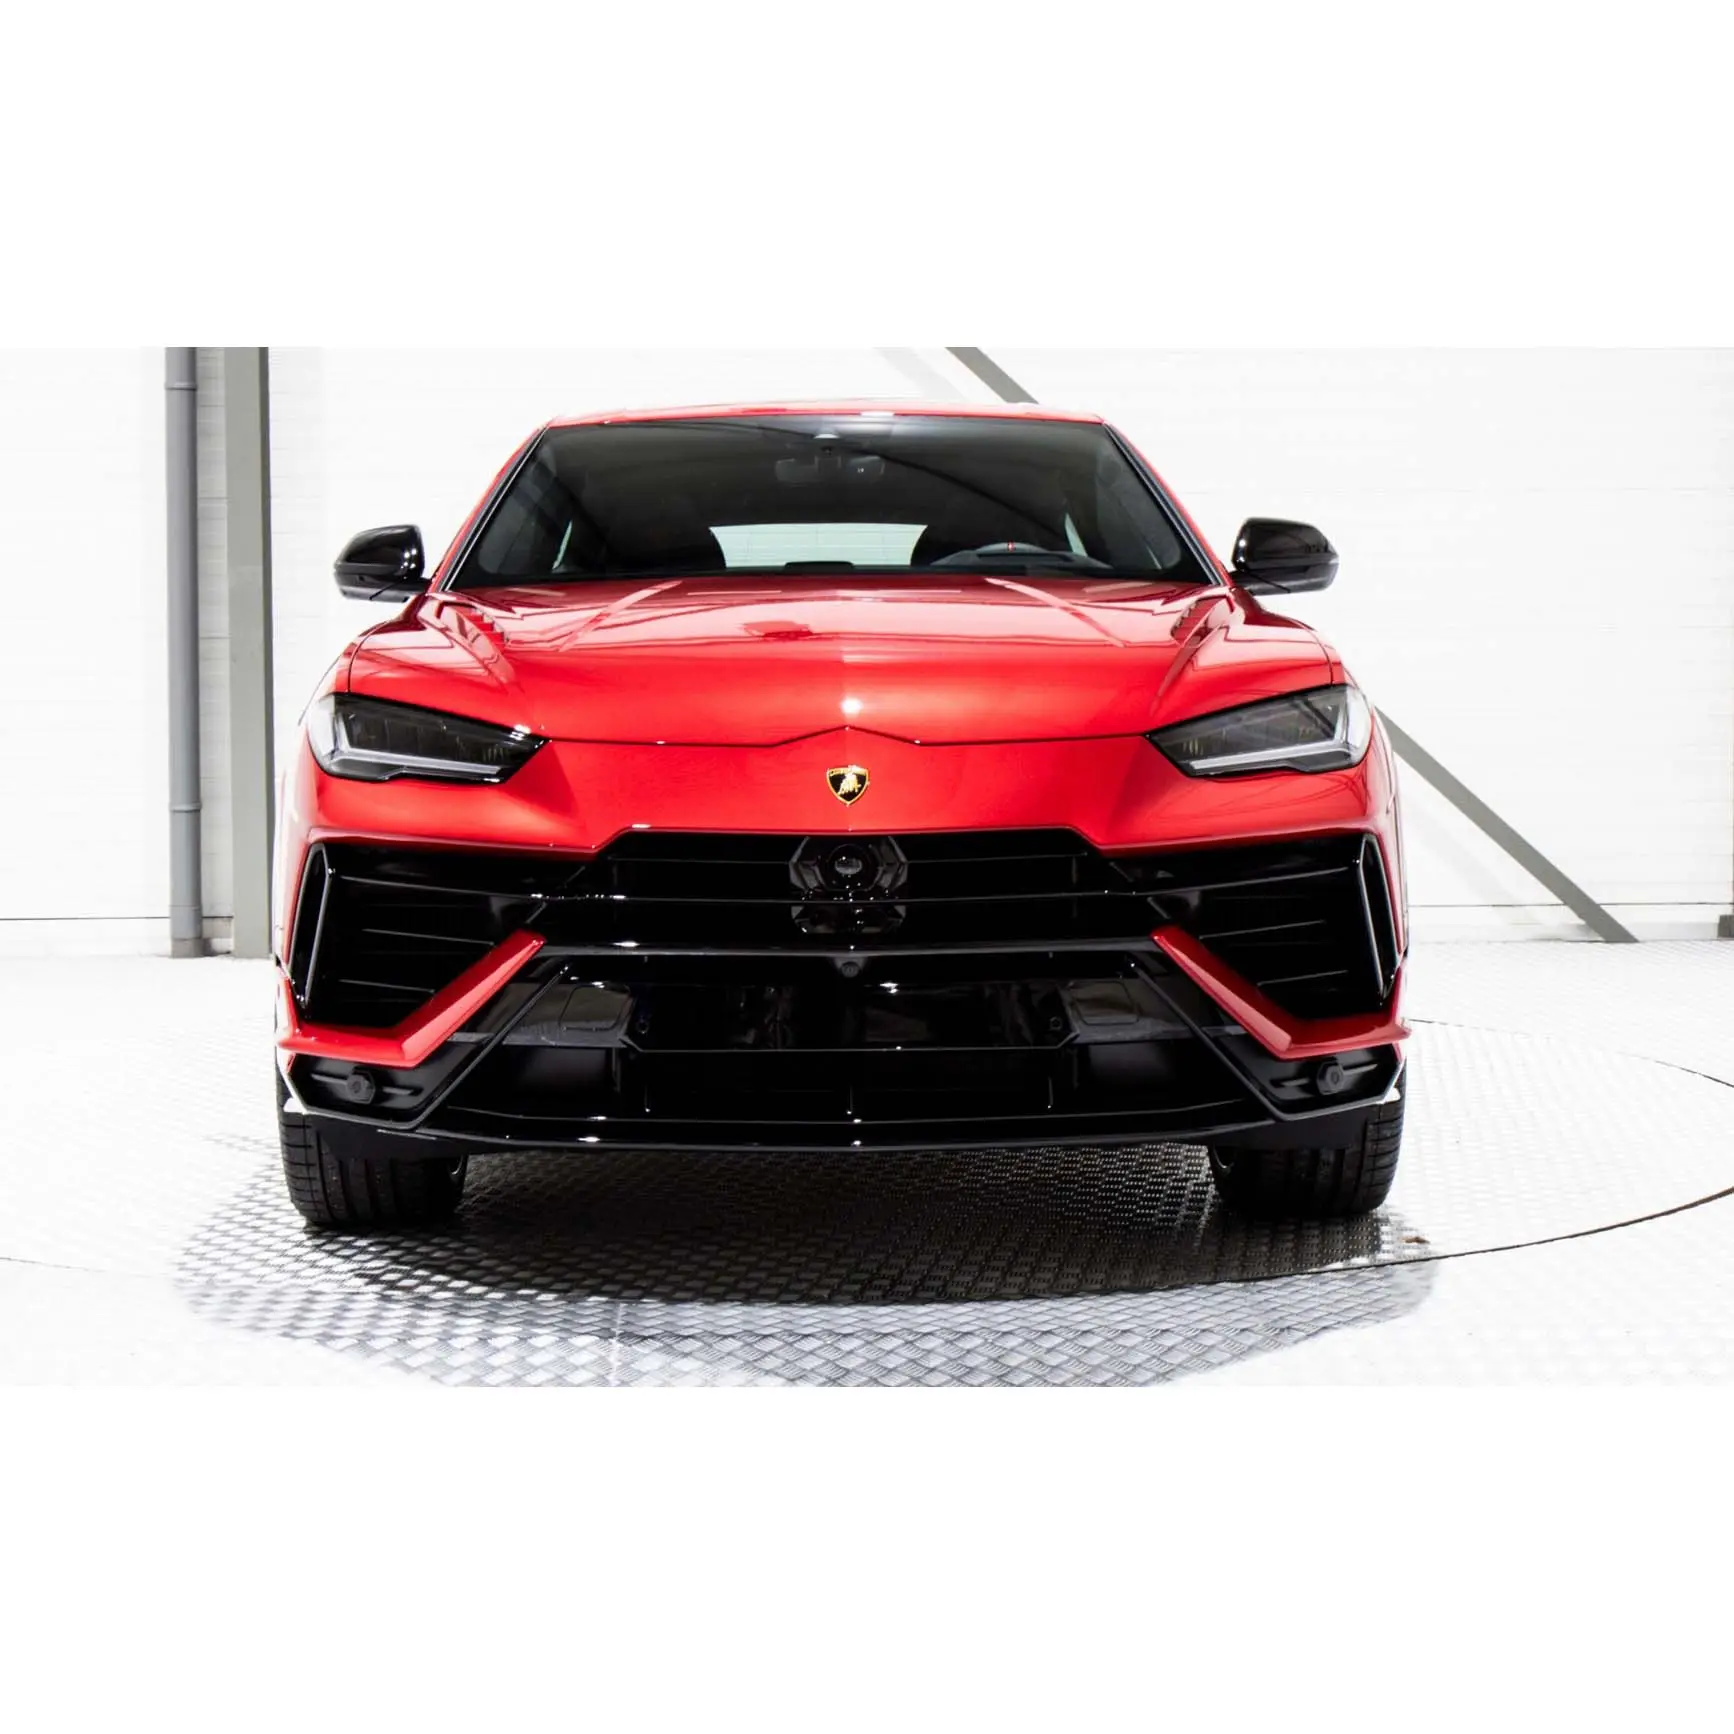 2024 SUV usado Lamborghini Urus vehículos de gasolina Registro DE LA UE SUV de lujo alta Opción Nuevo Lamborghini coche real Lamborghini